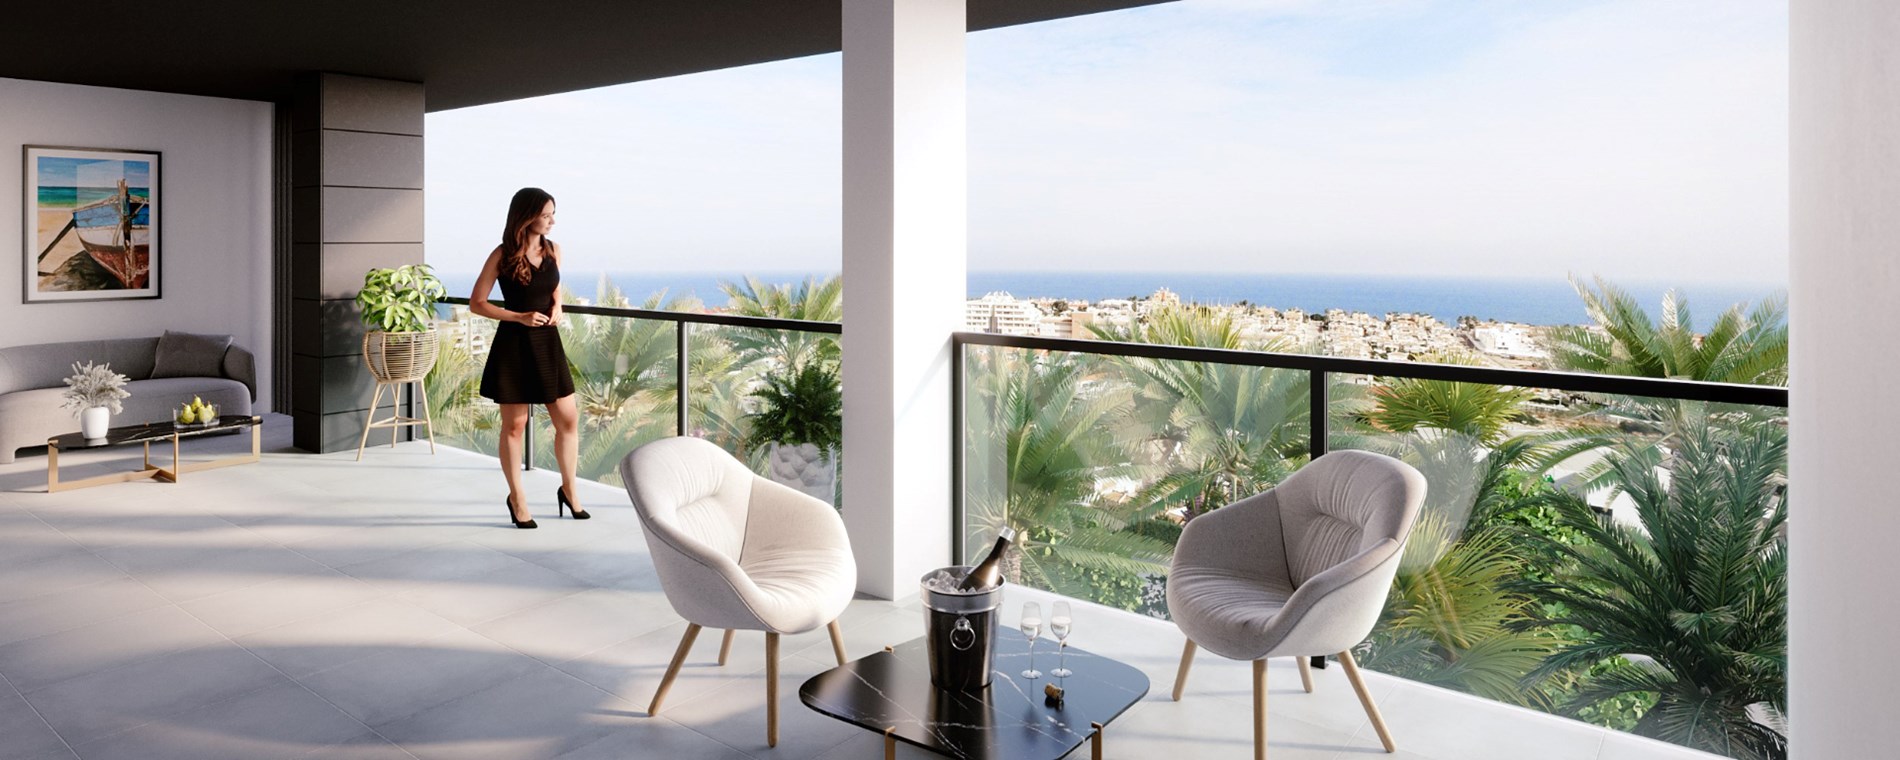 Luxe appartementen met uitzicht op zee 